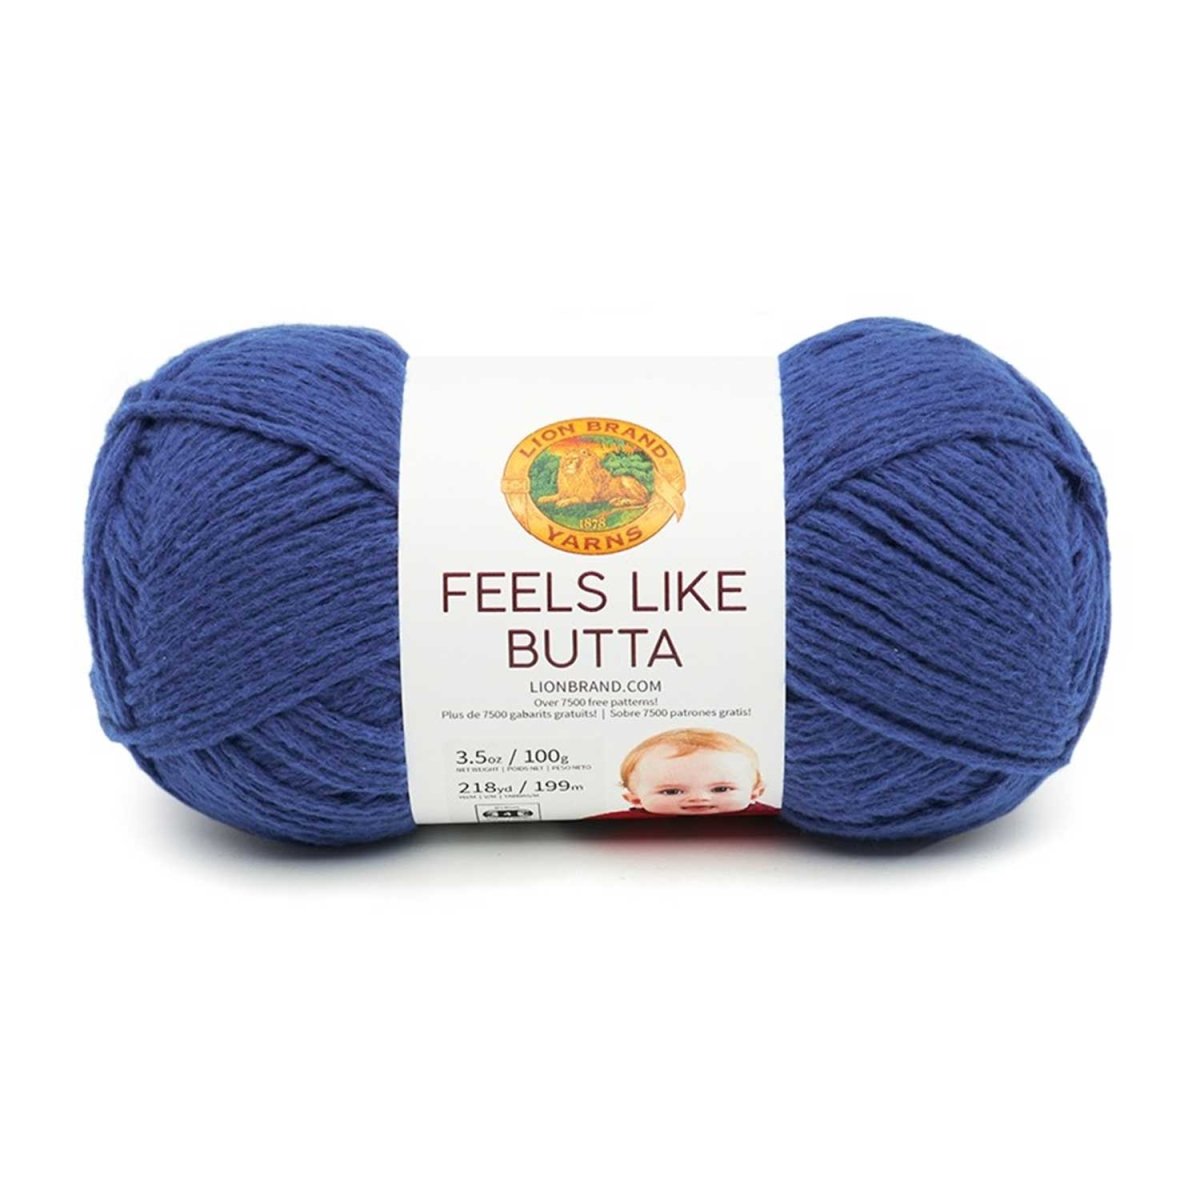 FEELS LIKE BUTTA - Crochetstores215-109